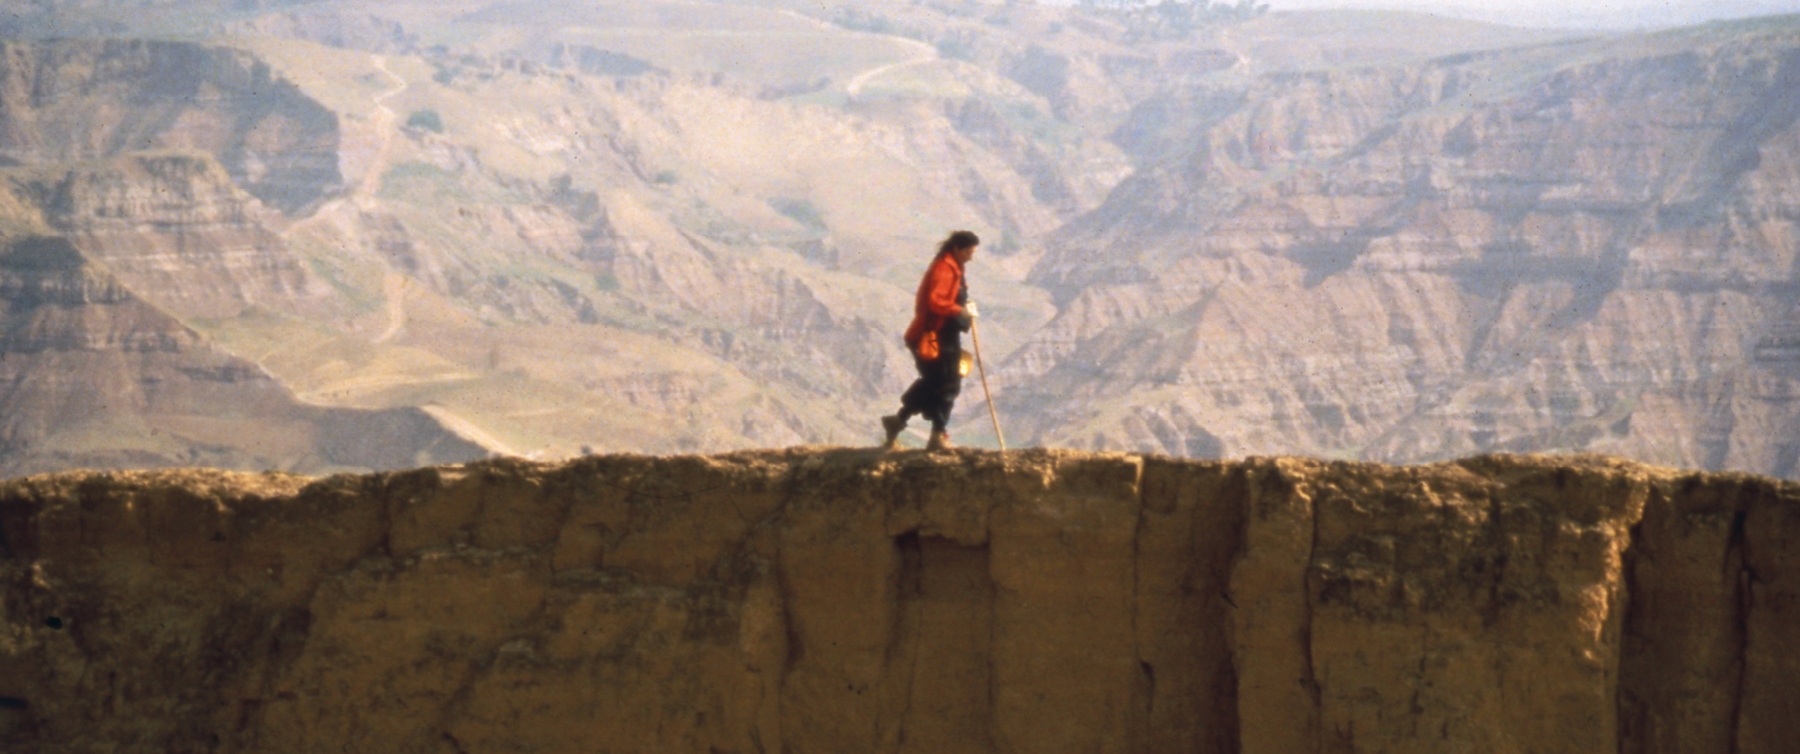 Fotografia. Pessoa de perfil, usando um casaco vermelho e trajes escuros, caminha apoiando-se em um bastão longo, no topo de uma muralha. Ao fundo, montanhas.